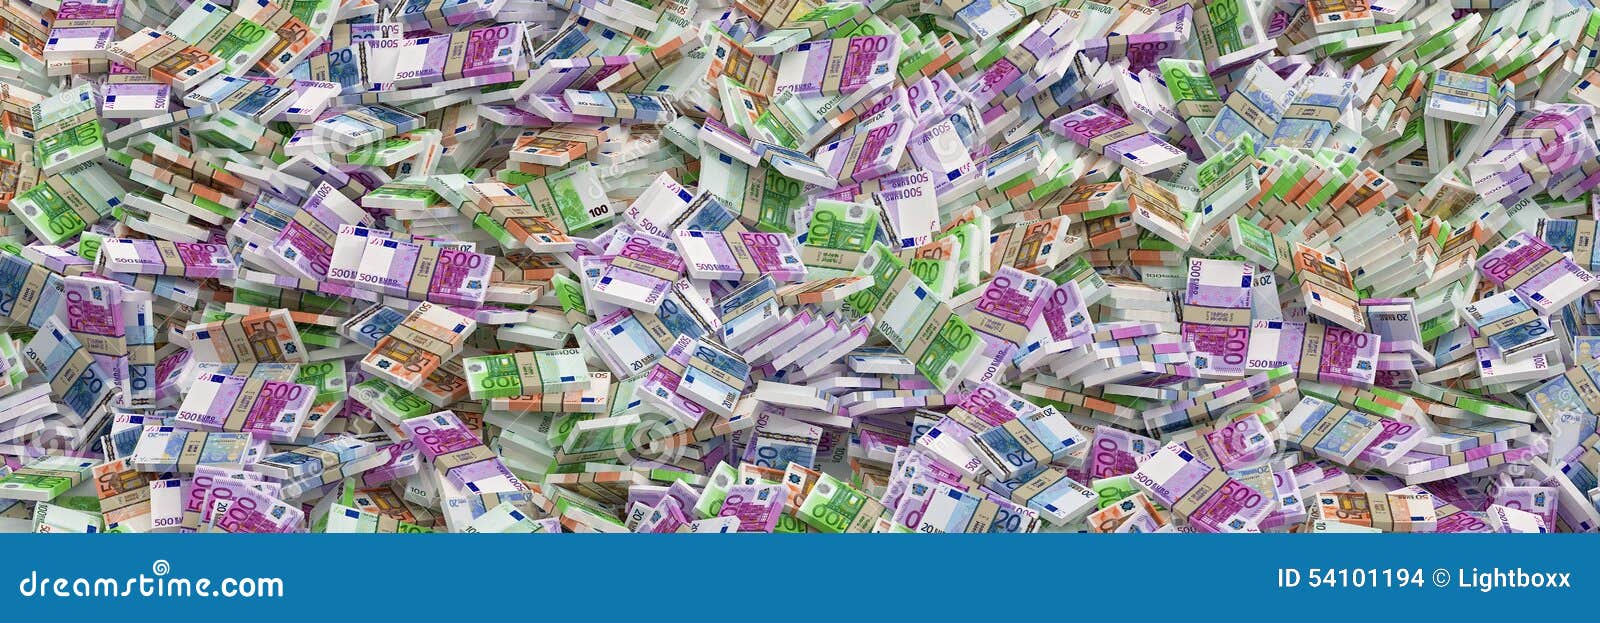 millions of euros - euro banknotes